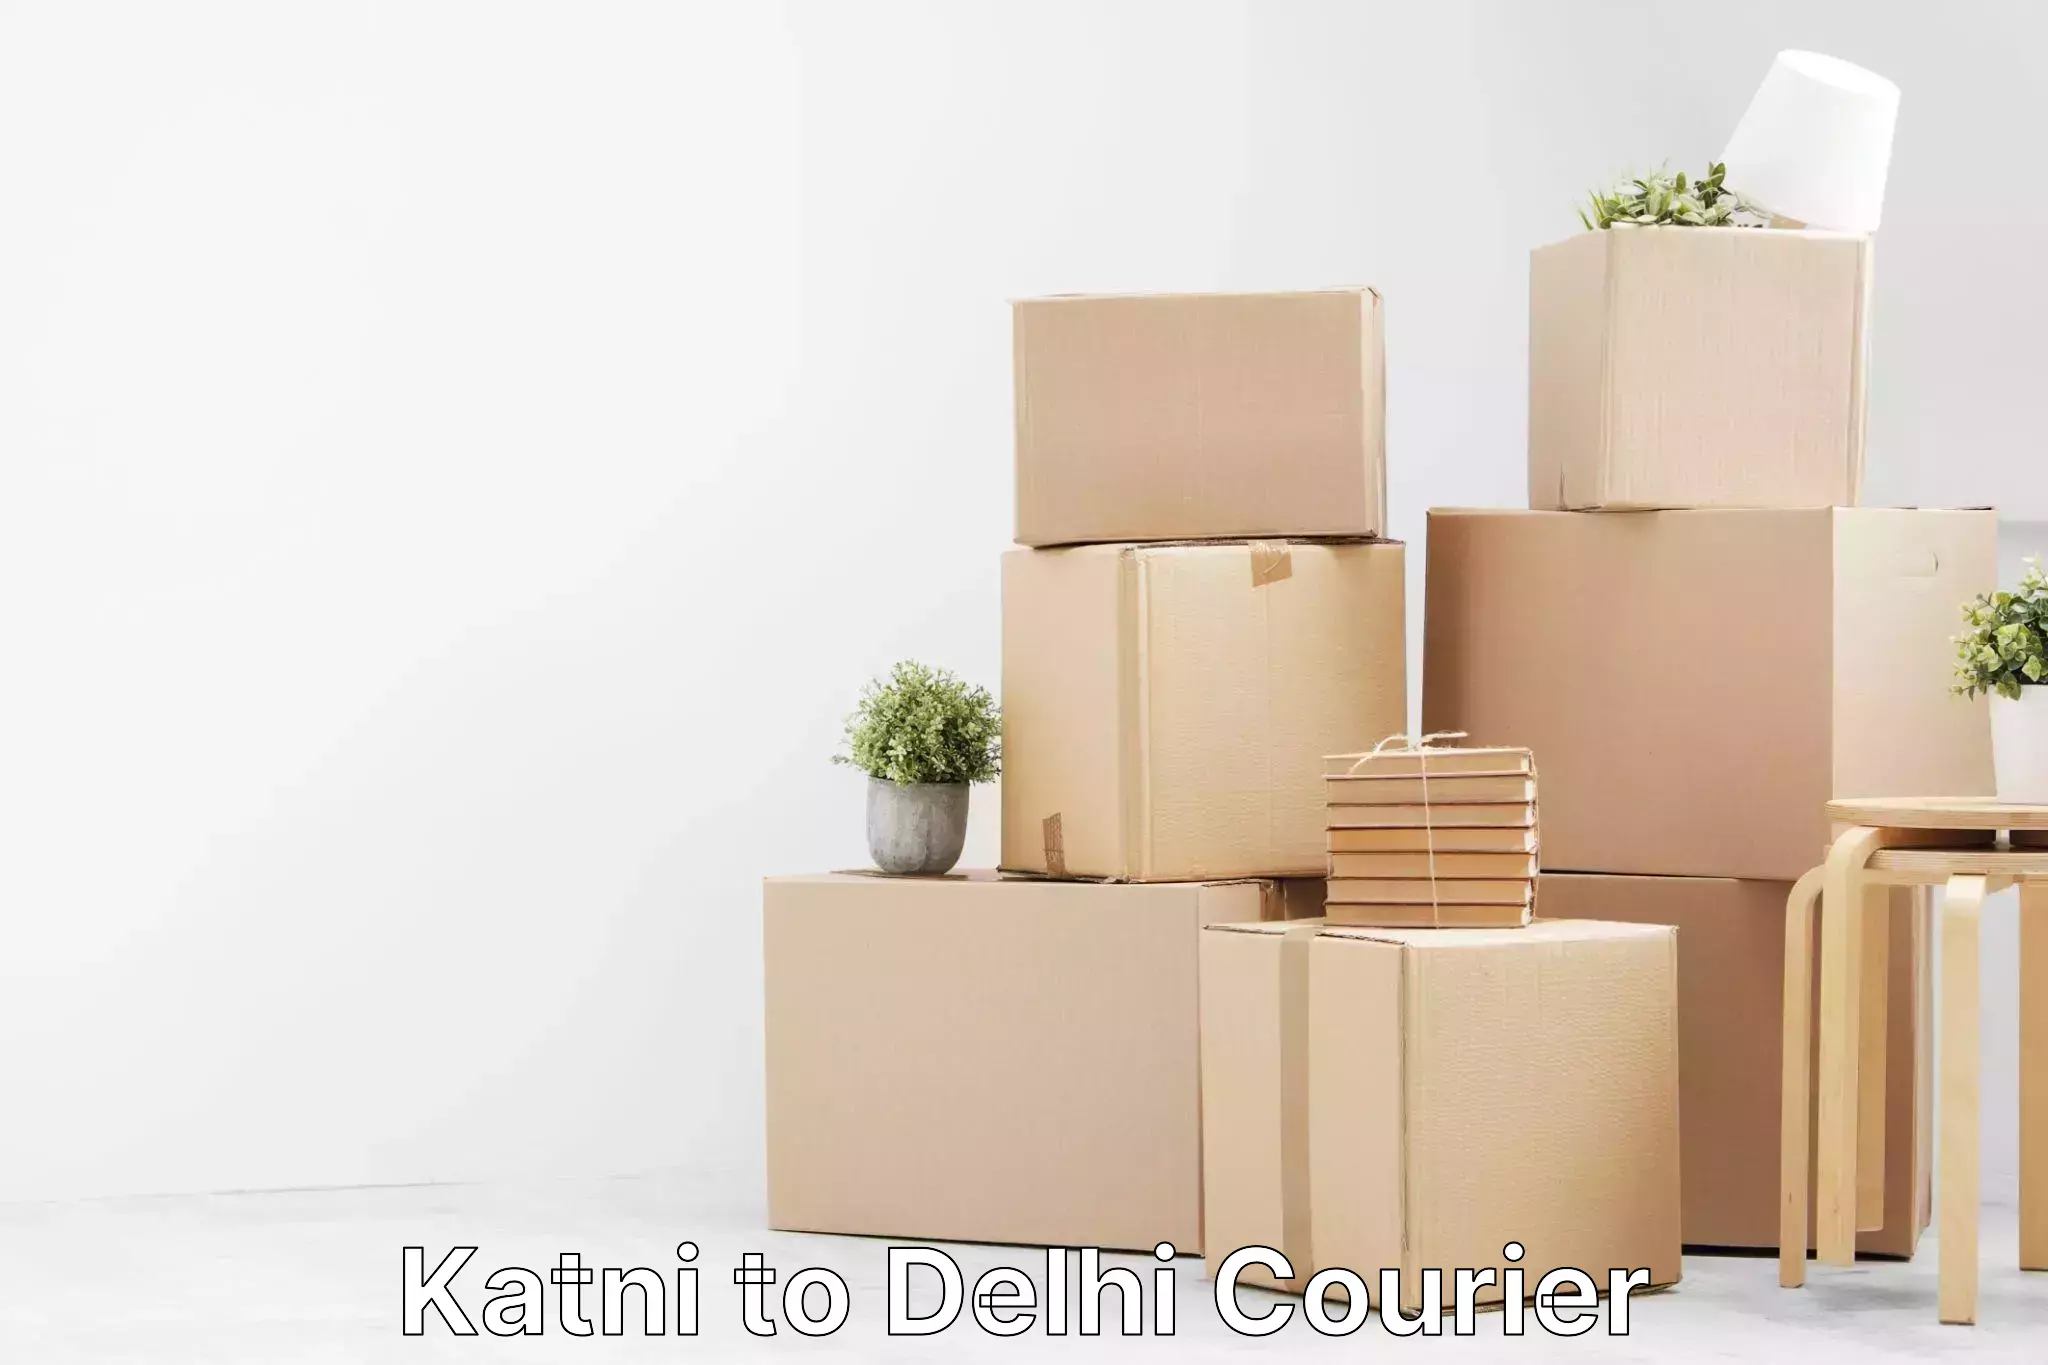 Global shipping solutions Katni to Delhi